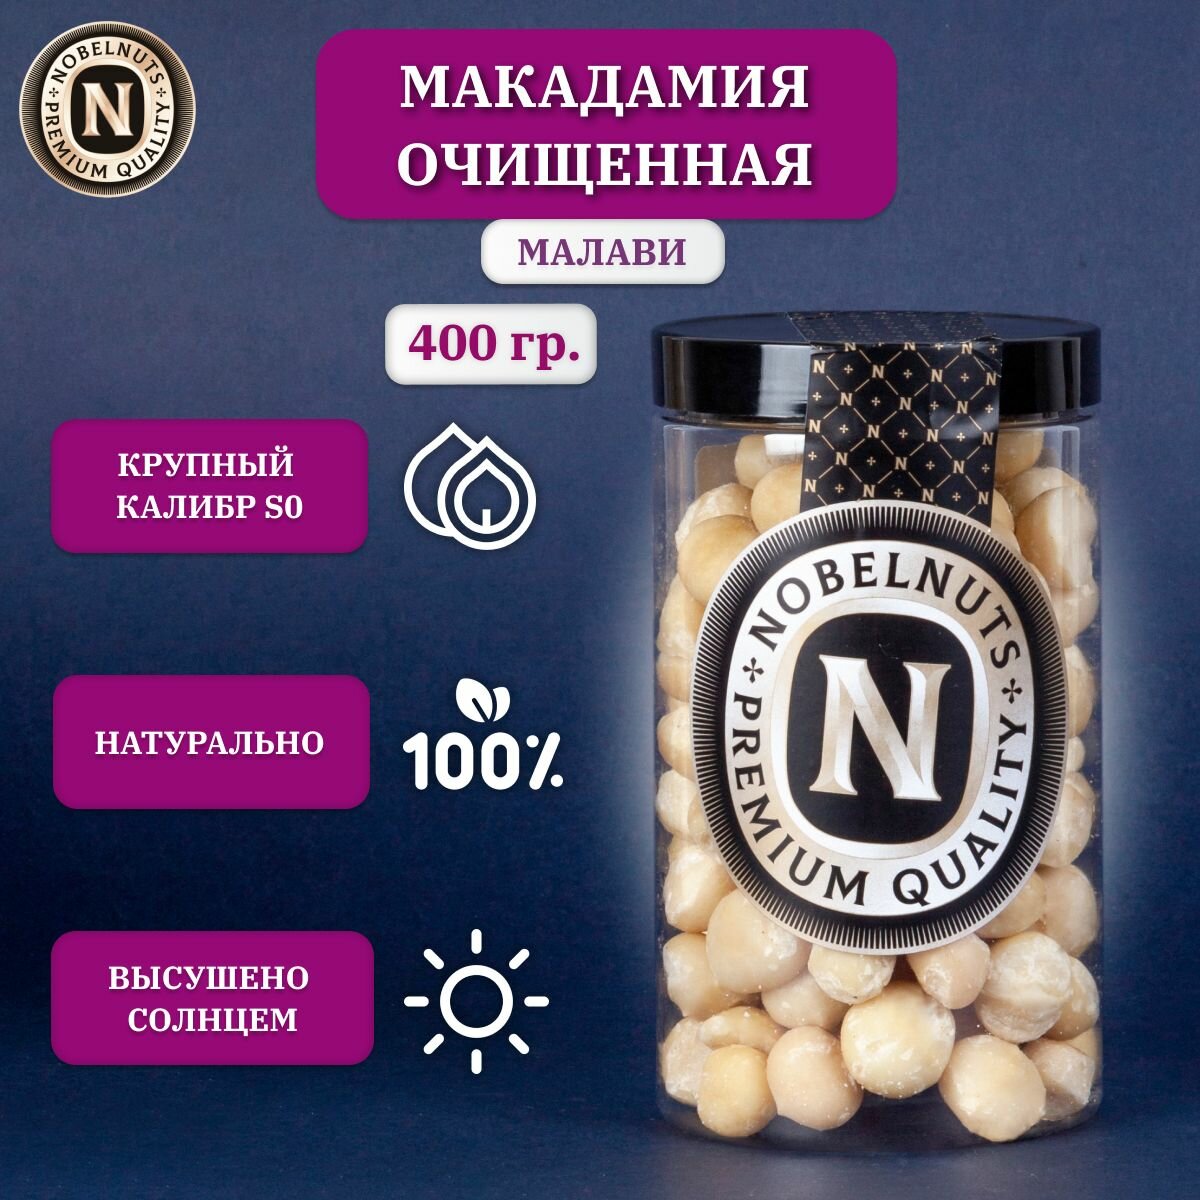 Макадамия орех очищенный NOBELNUTS, крупный, Premium, Малави, в банке 400 гр.